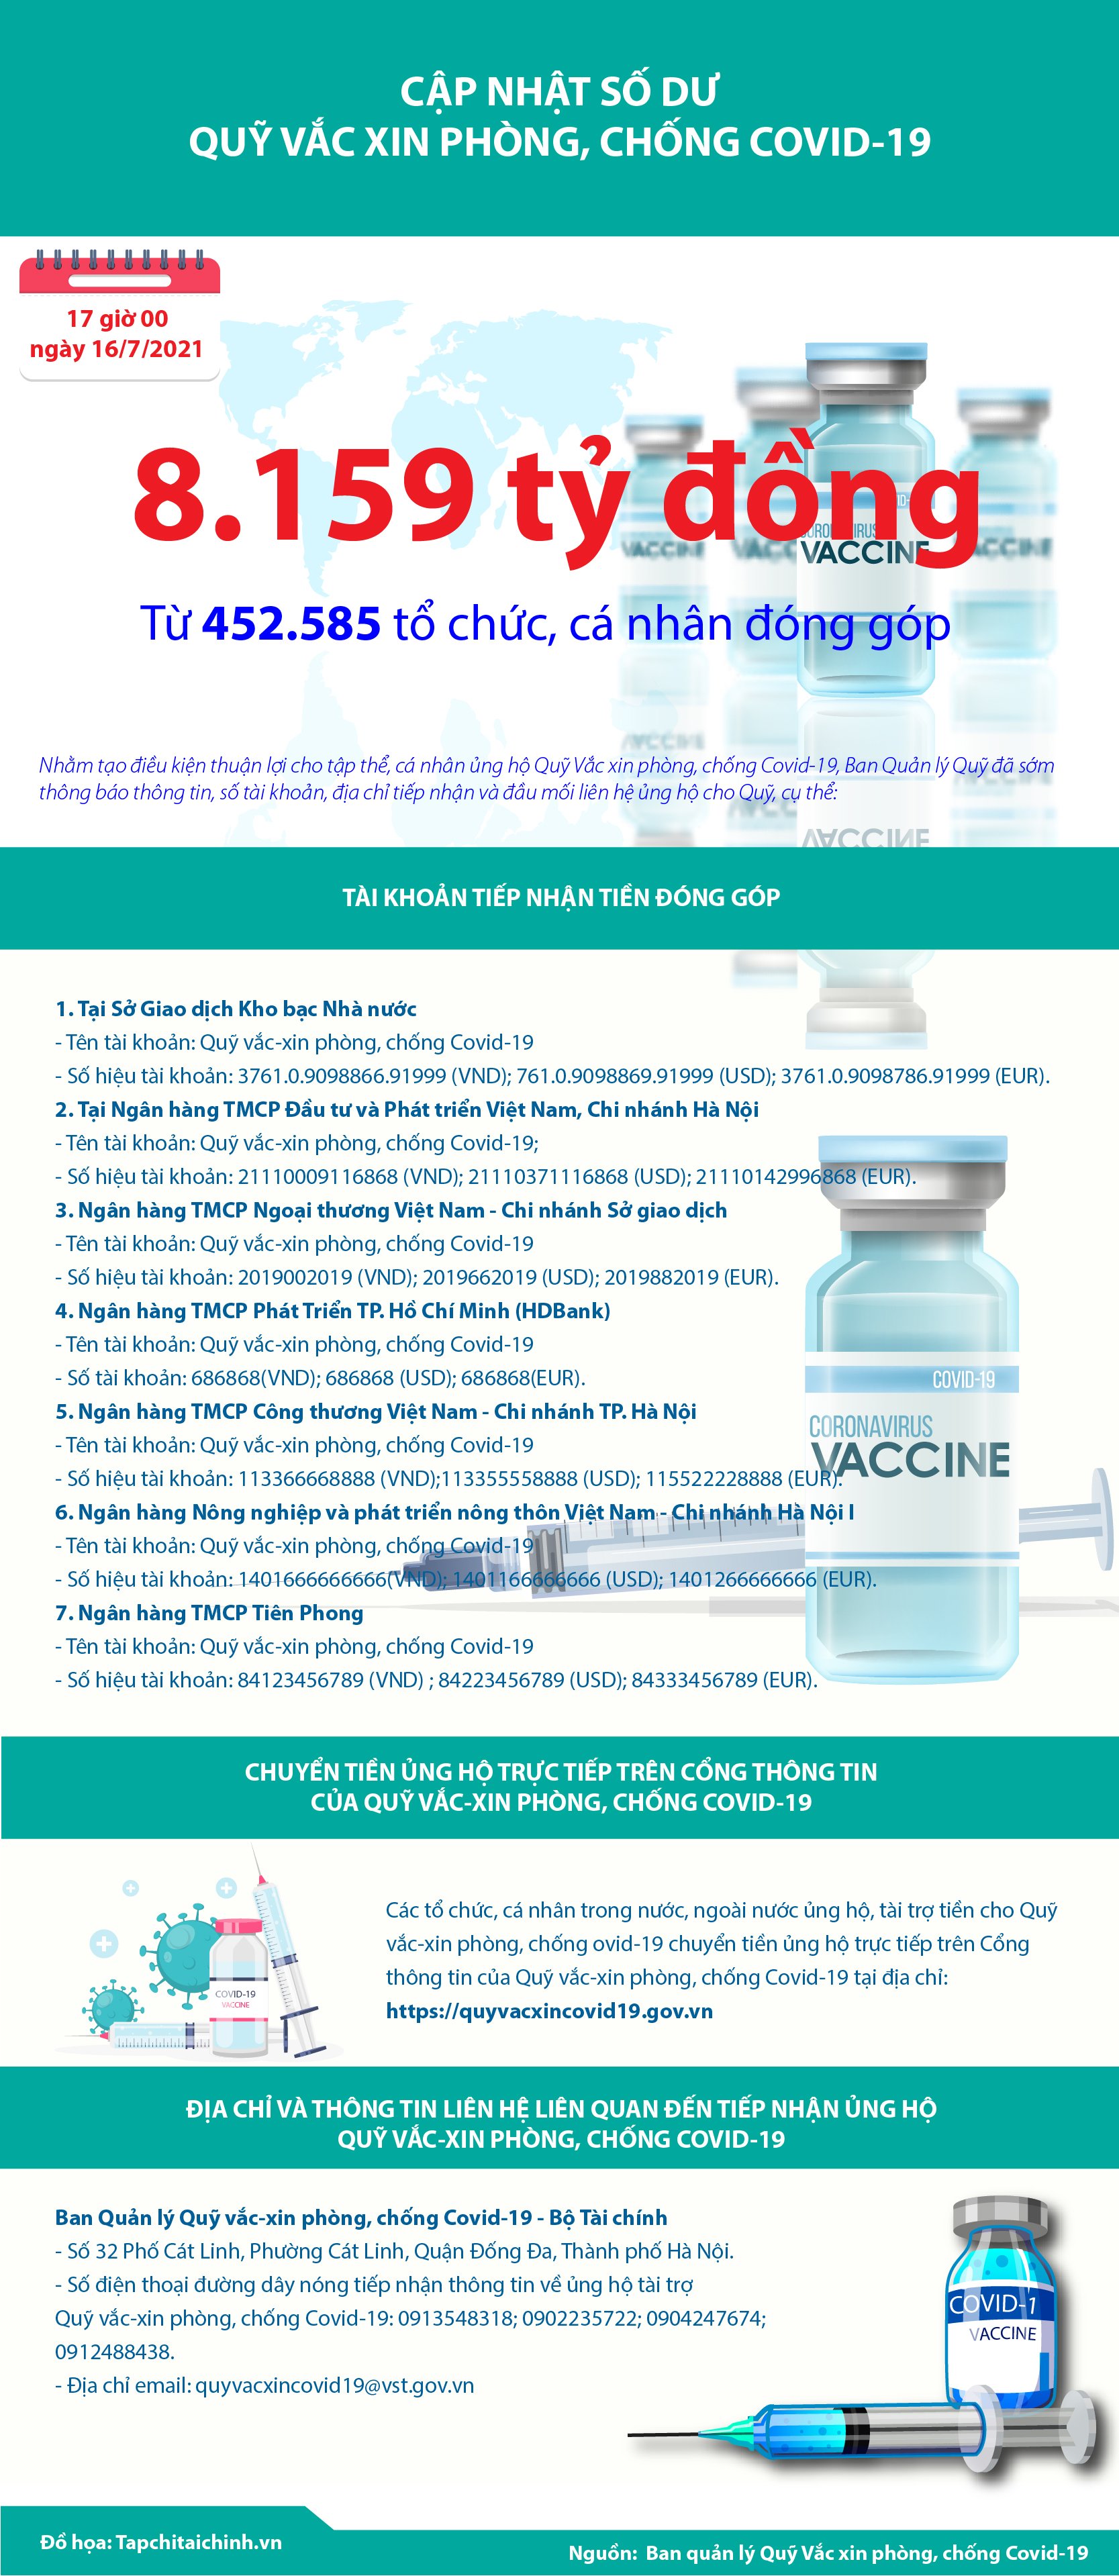 [Infographics] Quỹ Vắc xin phòng, chống Covid-19 đã tiếp nhận ủng hộ 8.159 tỷ đồng - Ảnh 1